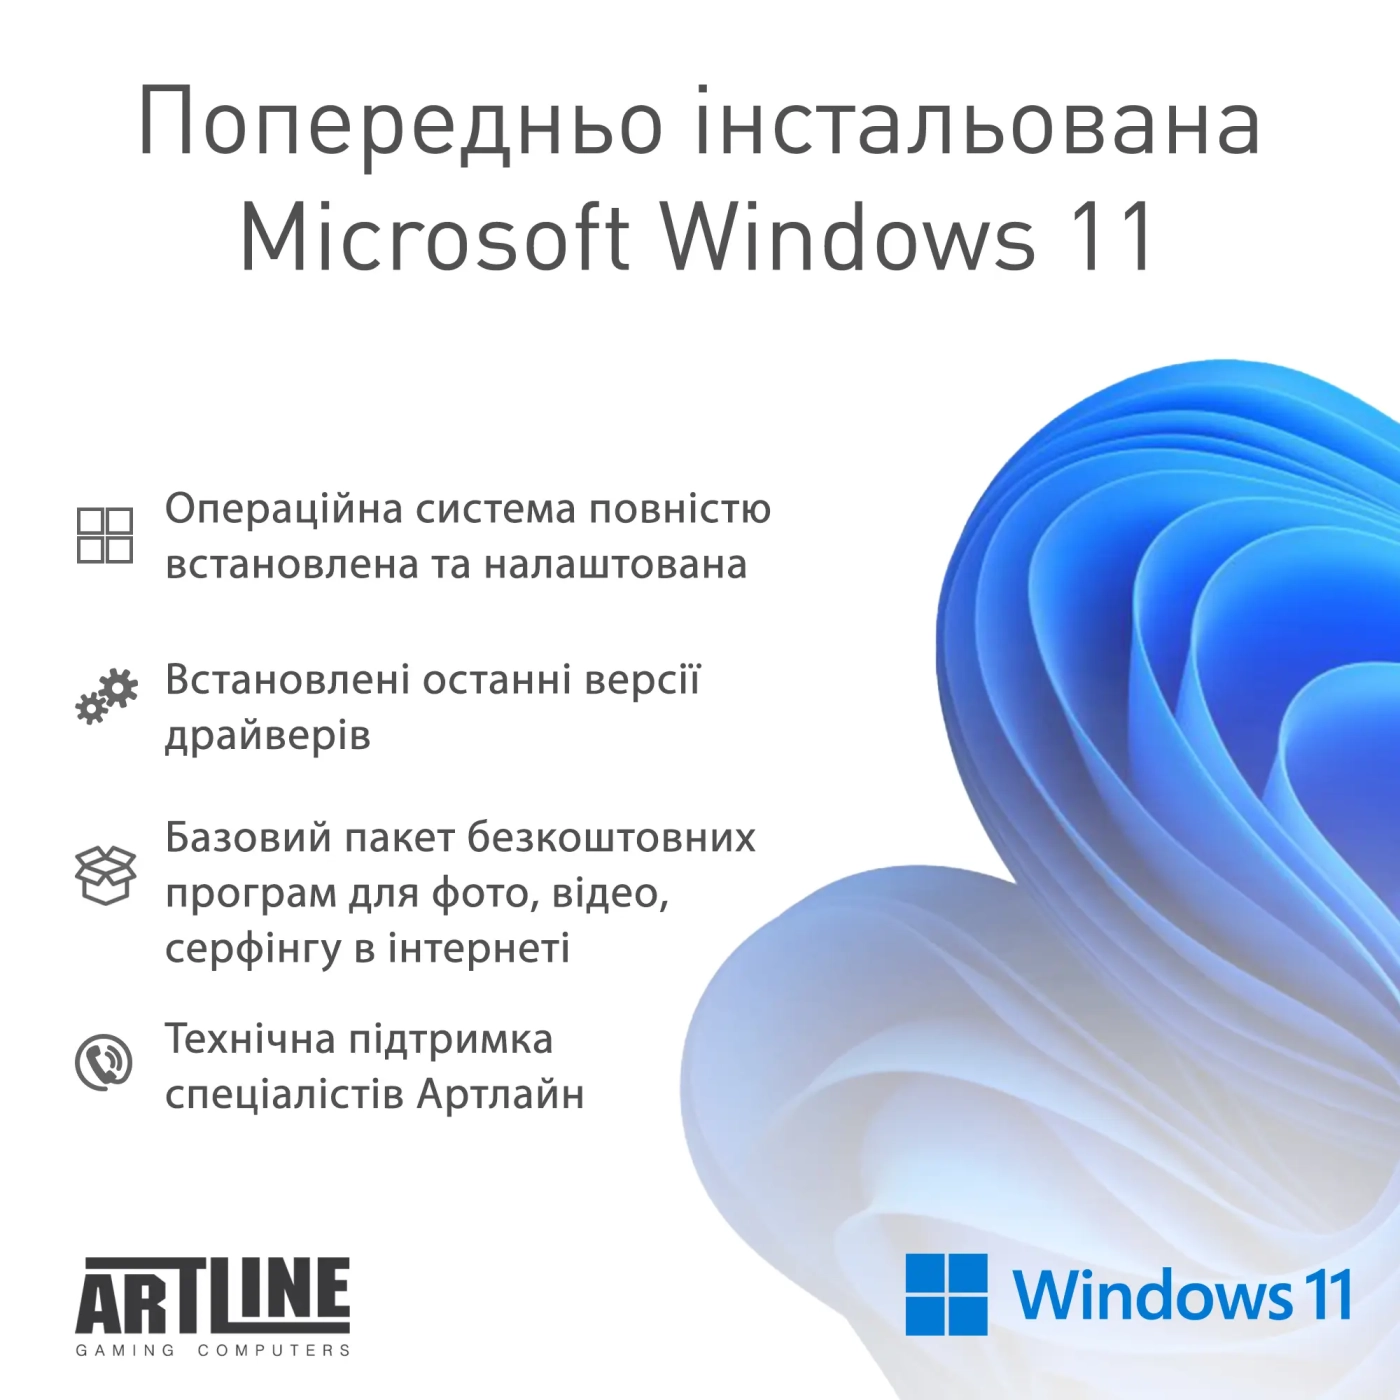 Купить Компьютер ARTLINE Gaming D31 Windows 11 Home (D31v40Win) - фото 11